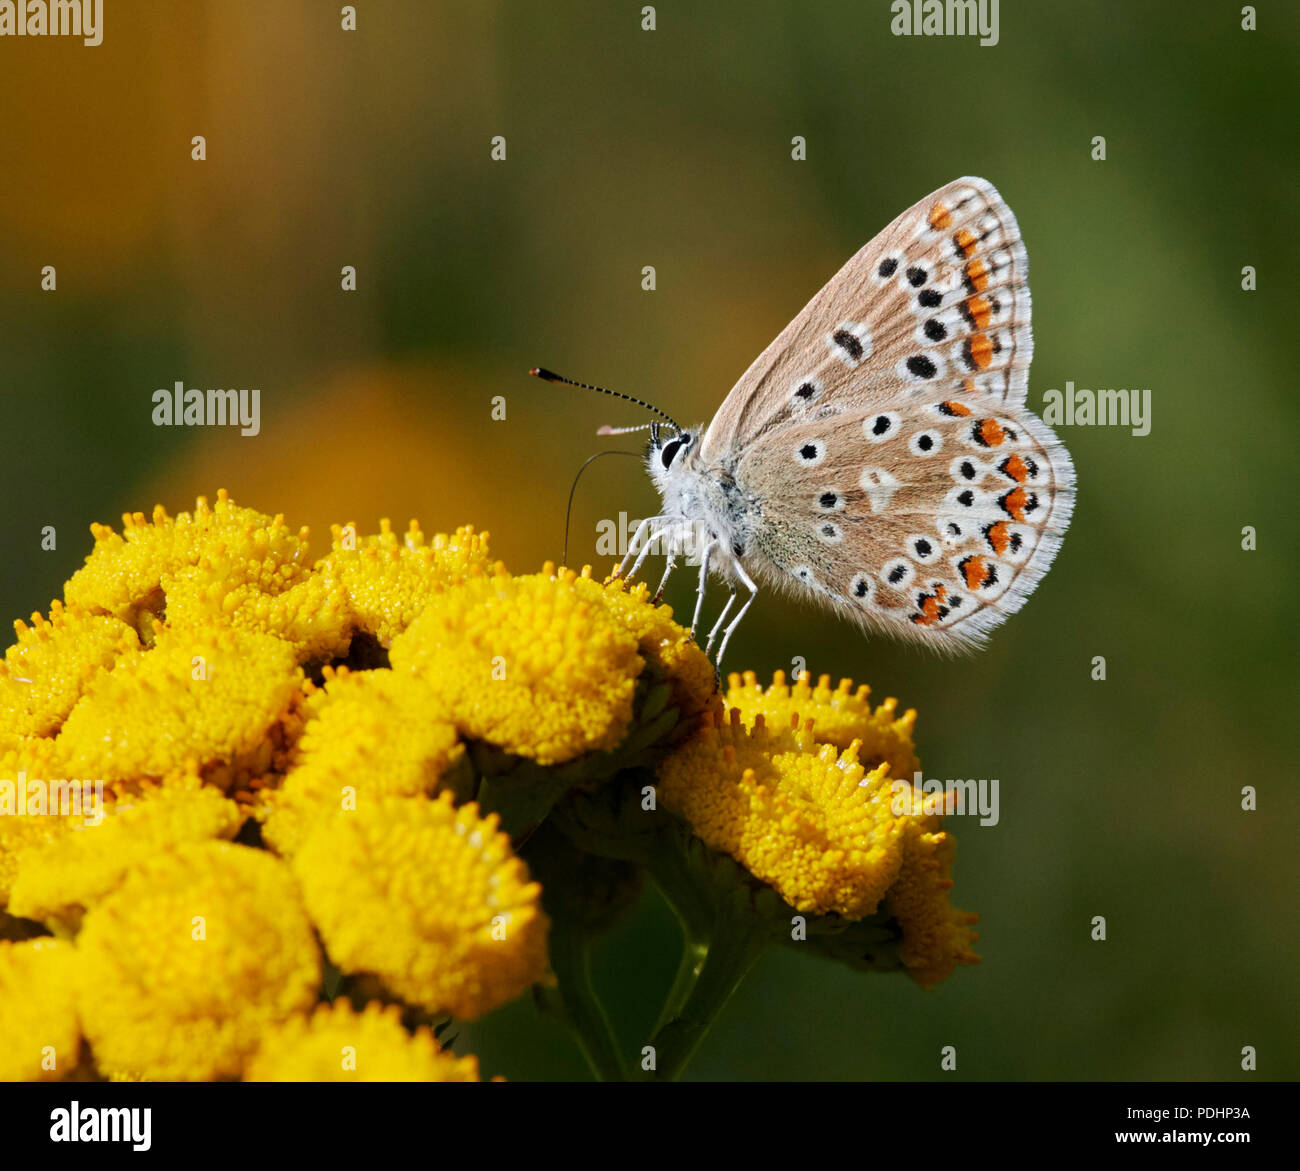 Femelle bleu commun sur le nectar. Hurst Meadows, East Molesey, Surrey, Angleterre. Banque D'Images